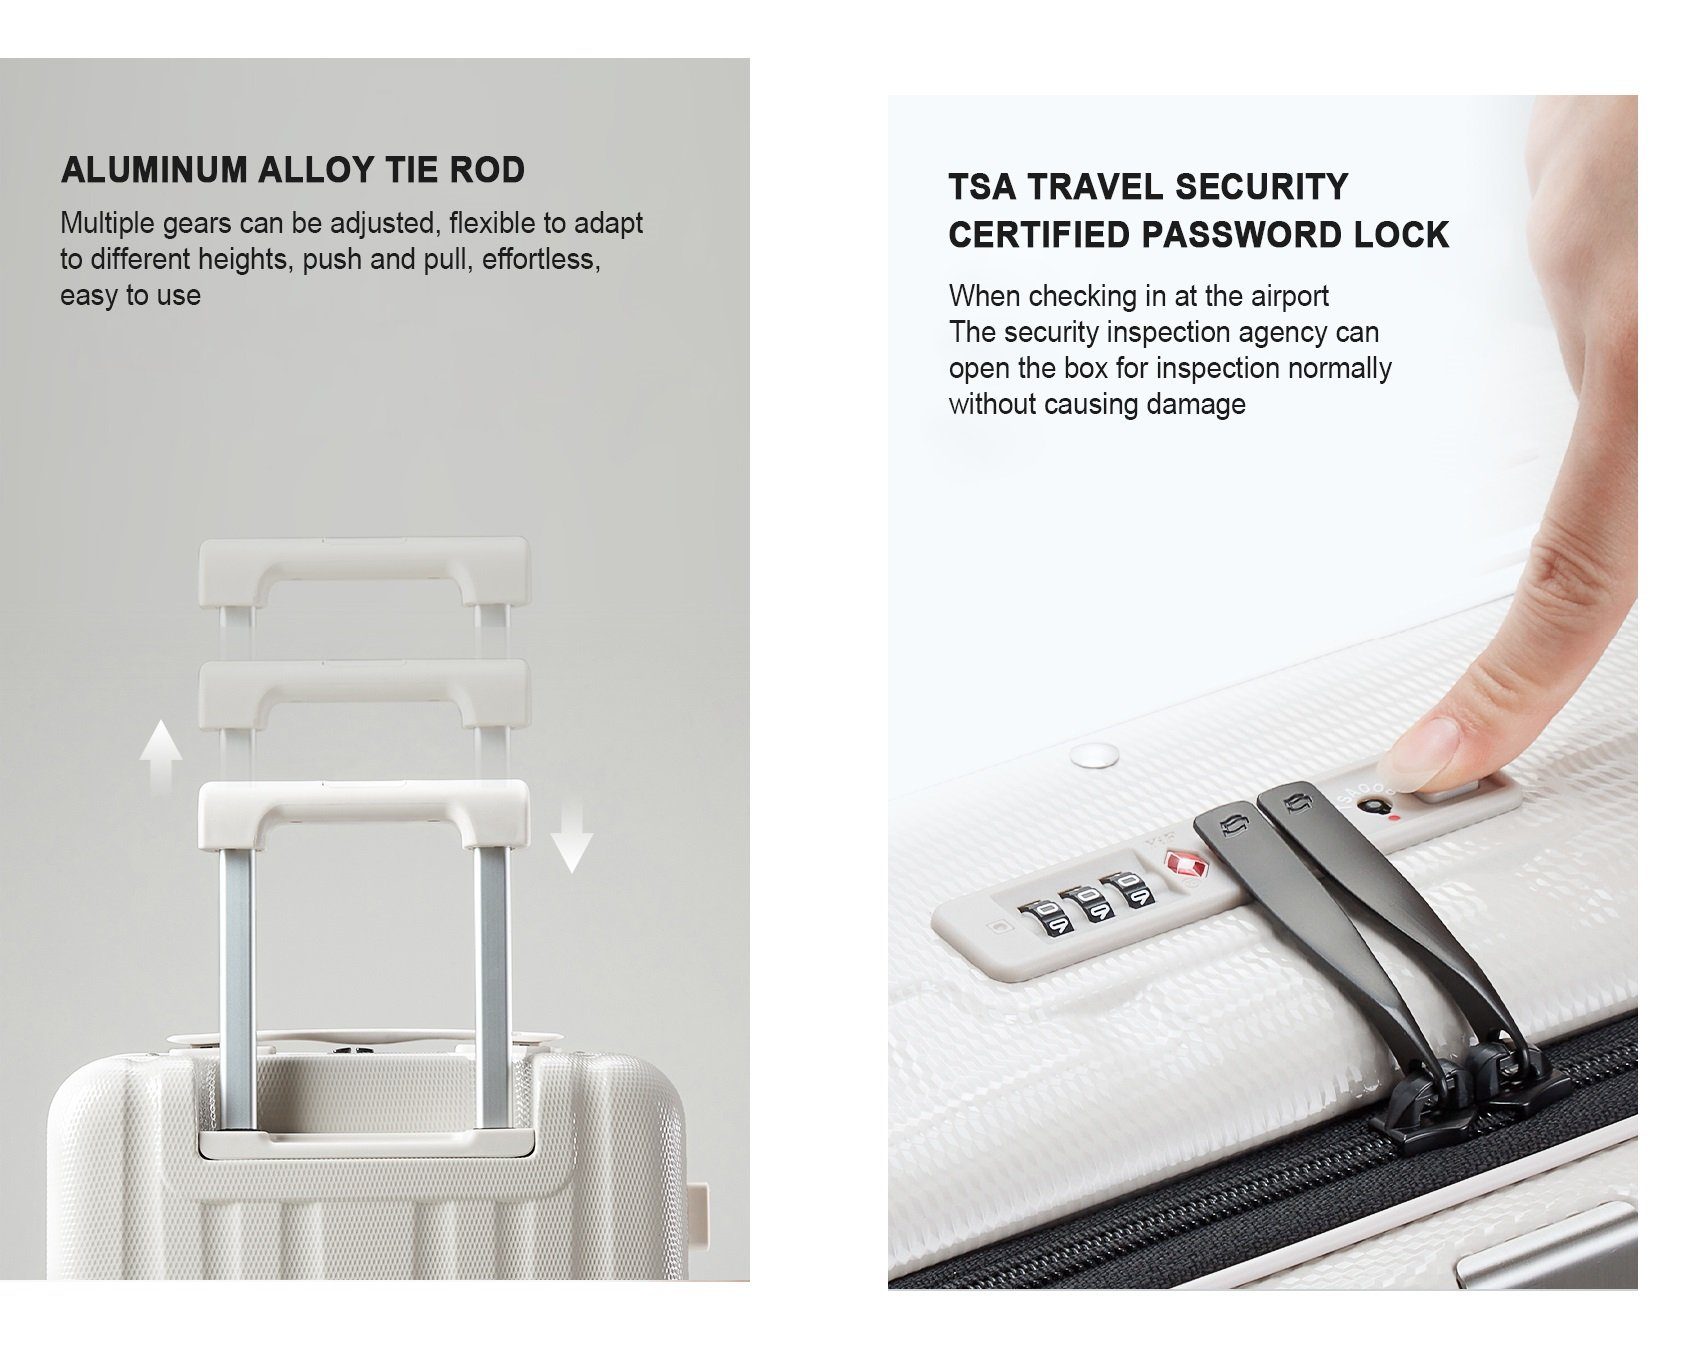 TSA Hanke Polycarbonat, Premium weiss Hartschalen-Trolley Laptopfach, Handgepäckkoffer mit